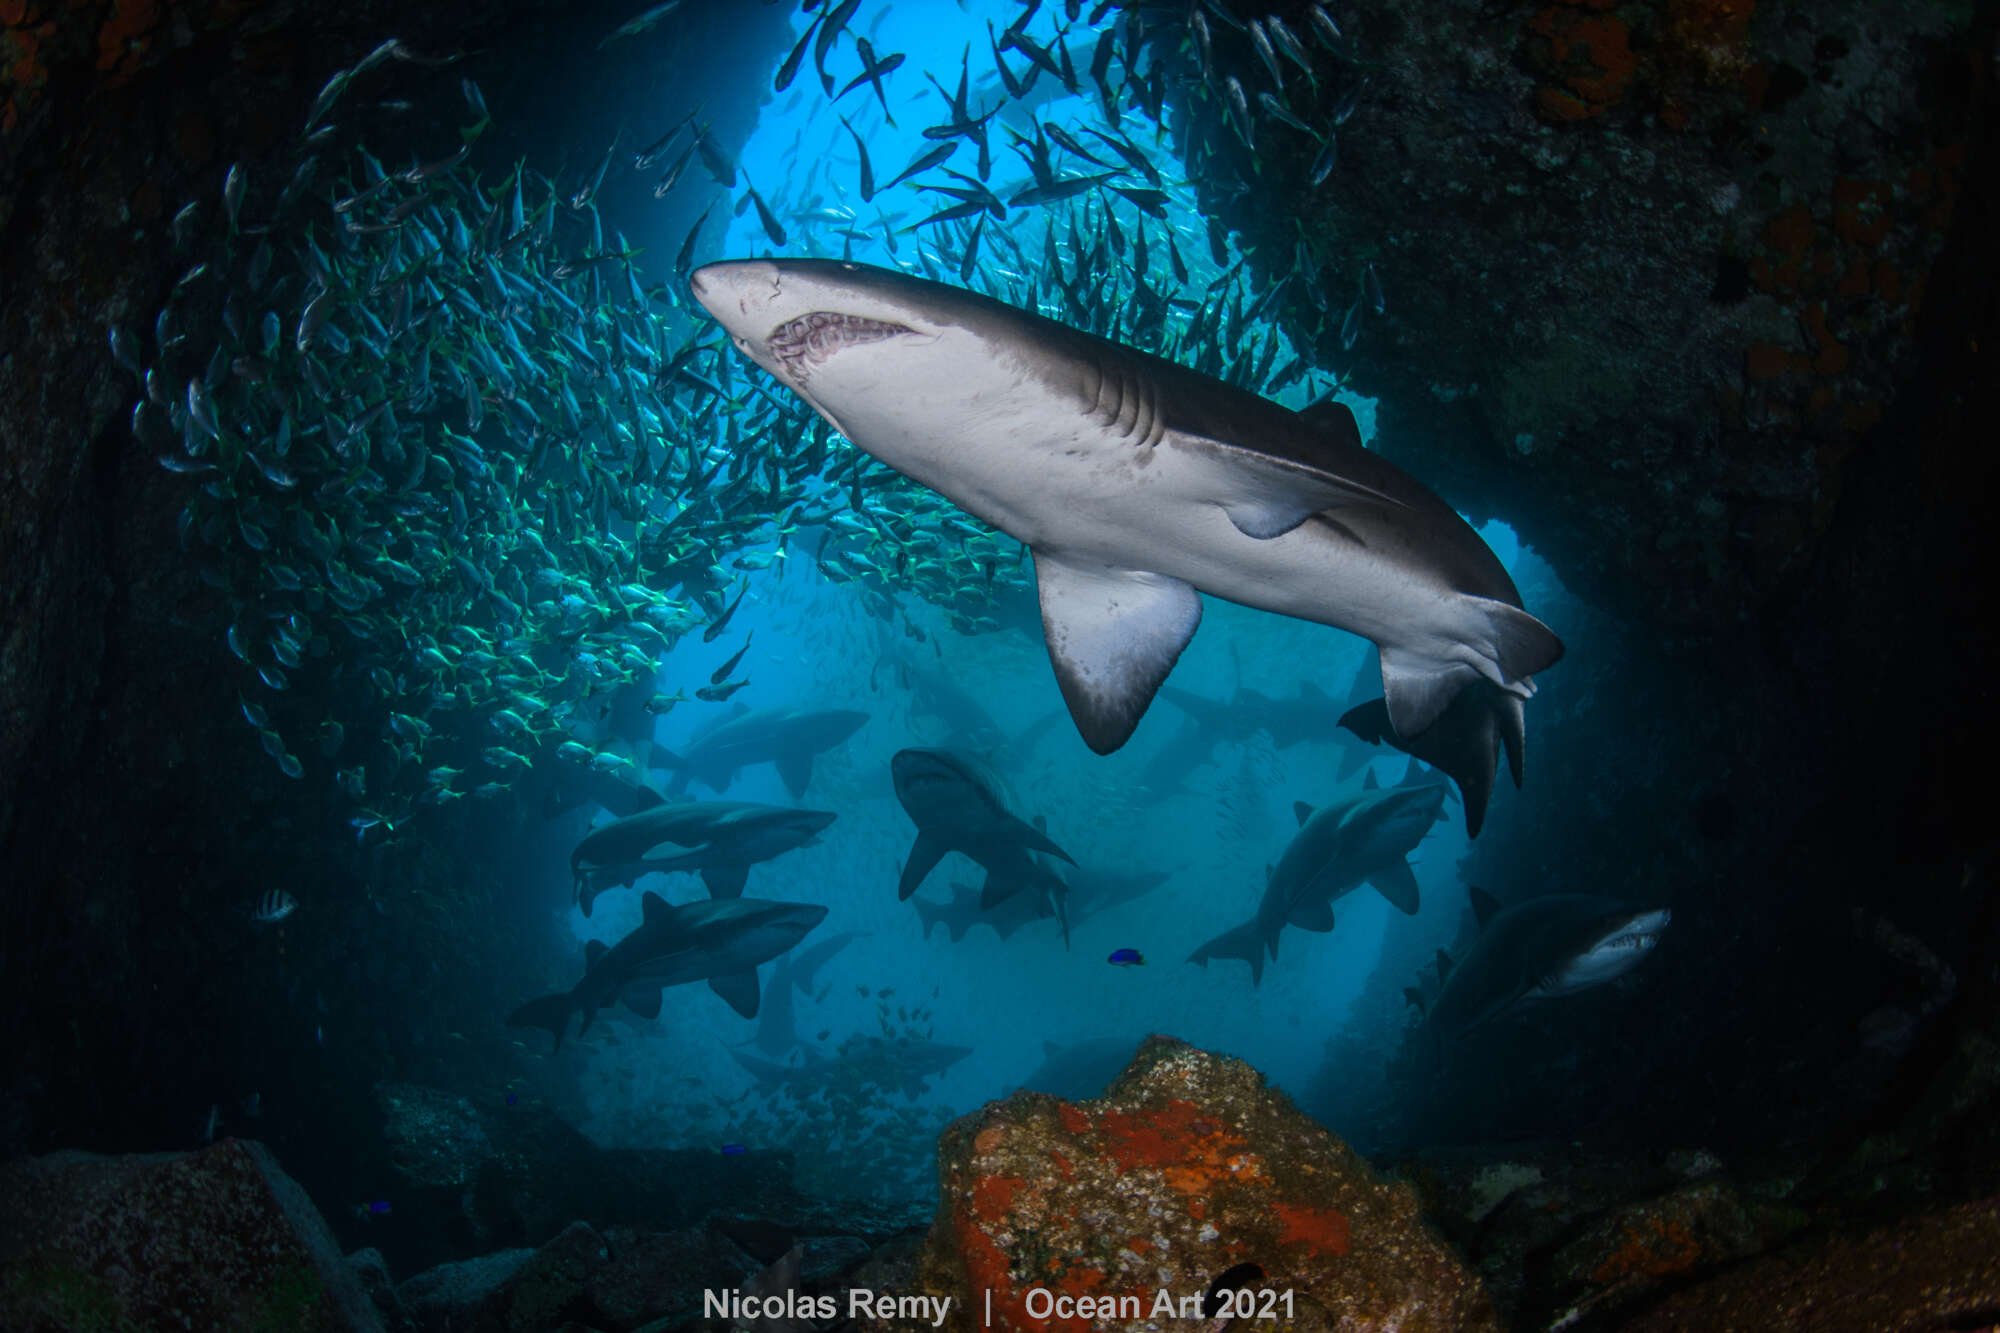 Δεύτερη θέση στην κατηγορία «Ευρυγώνια λήψη» μια εντυπωσιακή εικόνα από το νησί Fish Rock στην Αυστραλία, στο οποίο βρίσκουν καταφύγιο οι καρχαρίες ταύροι, γνωστοί και ως γκρίζοι καρχαρίες-τροφοί, ένα μεγάλο είδος που κατοικεί σε παράκτια ύδατα σε όλο τον κόσμο. Οι καρχαρίες ξεκουράζονται σε υποθαλάσσια σπηλιά, επειδή εκεί η θερμοκρασία είναι υψηλότερη και ταυτόχρονα αποφεύγουν τα ρεύματα. Ετσι δεν χρειάζεται να καταναλώσουν πολλή ενέργεια όταν κολυμπούν μισοκοιμισμένοι. Την χρειάζονται για τη νύχτα, όταν βγαίνουν για φαγητό...